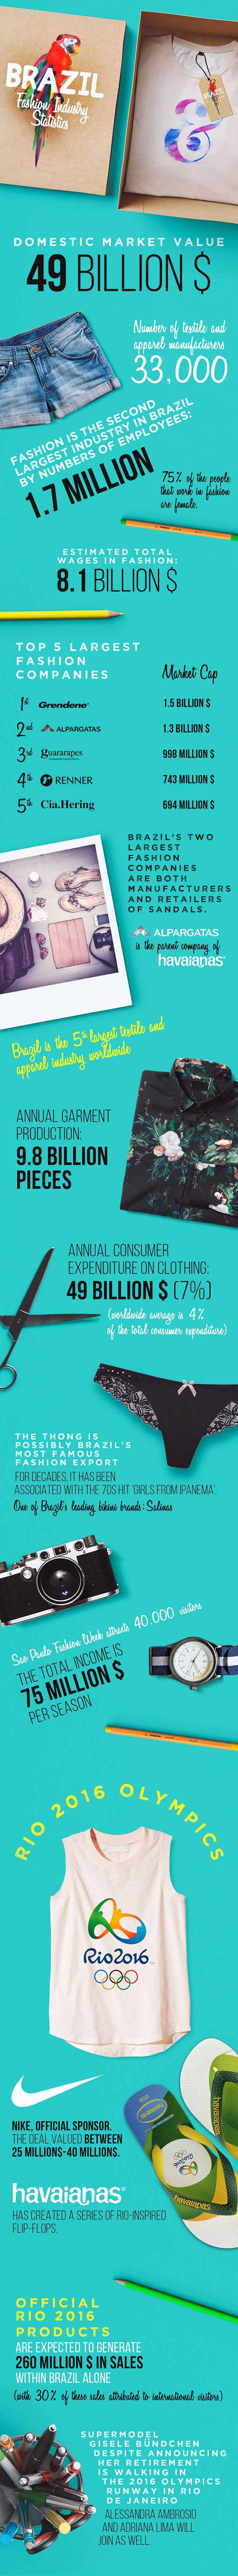 Estadísticas sobre la industria de la moda – Serie de infografías. Parte 3: Brasil